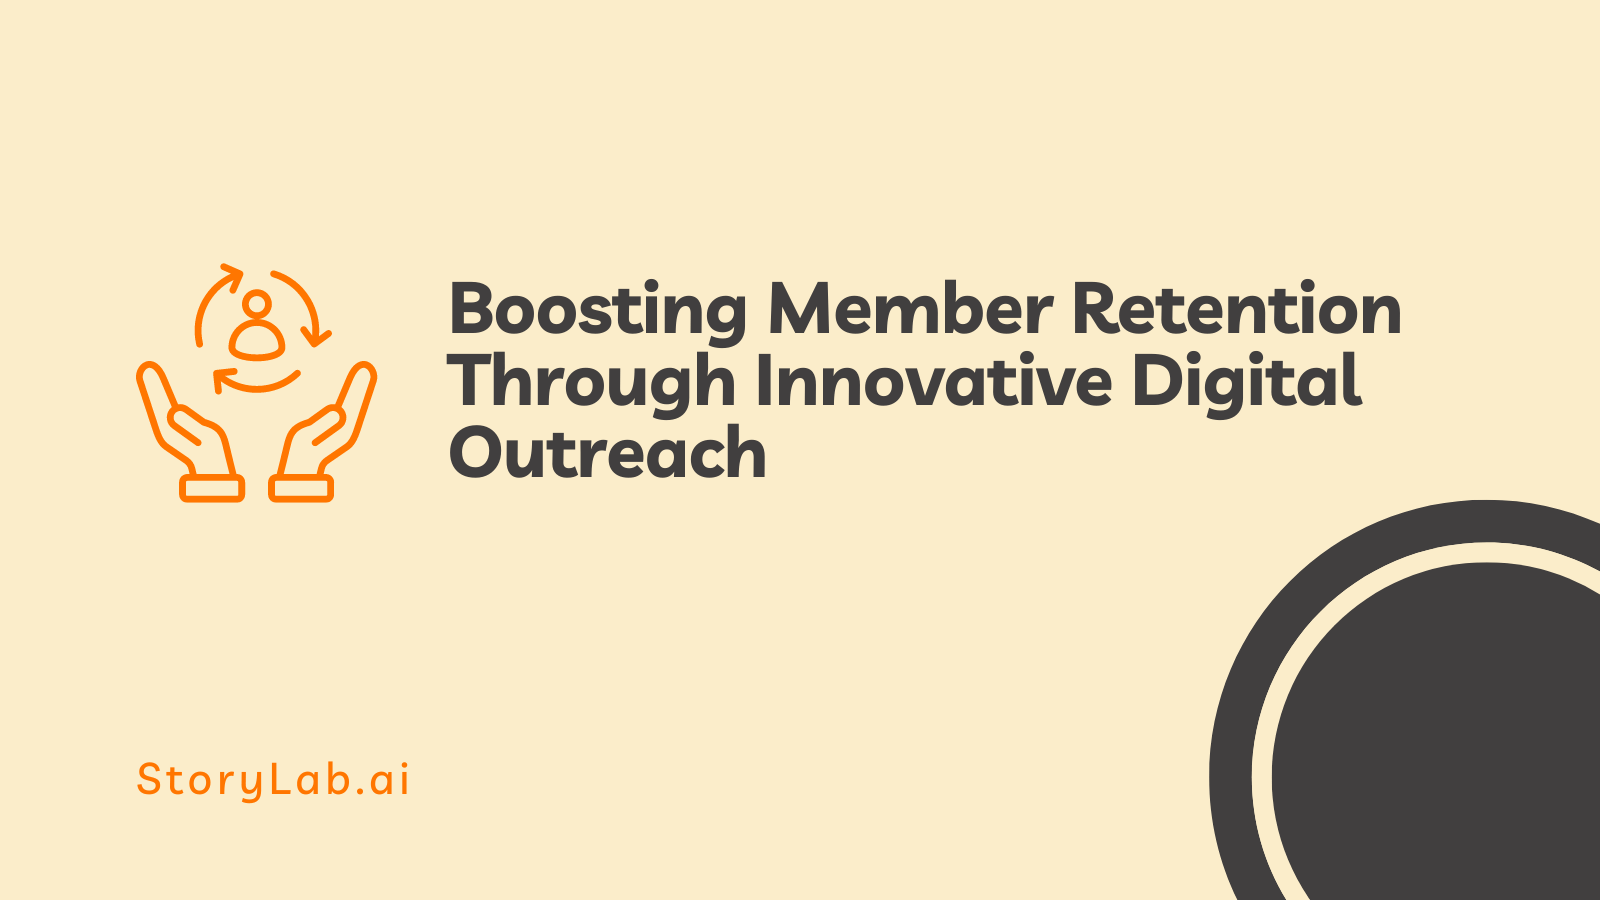 Impulsar la retención de miembros a través de un alcance digital innovador